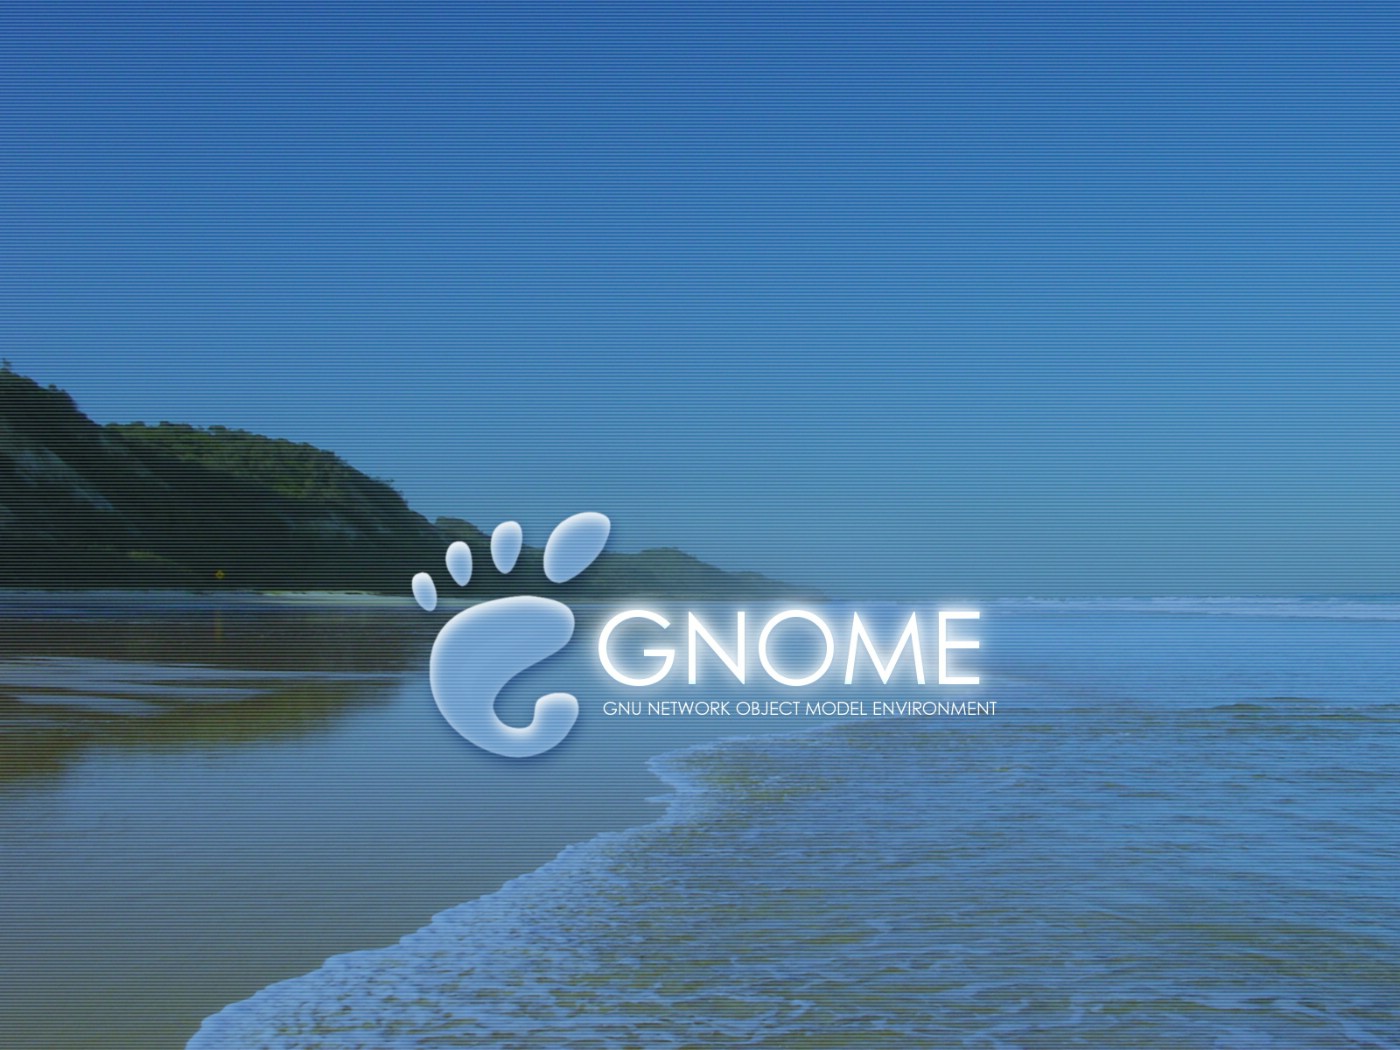 壁纸1400x10501600Gnome 1 15壁纸 Gnome 1600Gnome 第一辑壁纸 Gnome 1600Gnome 第一辑图片 Gnome 1600Gnome 第一辑素材 系统壁纸 系统图库 系统图片素材桌面壁纸